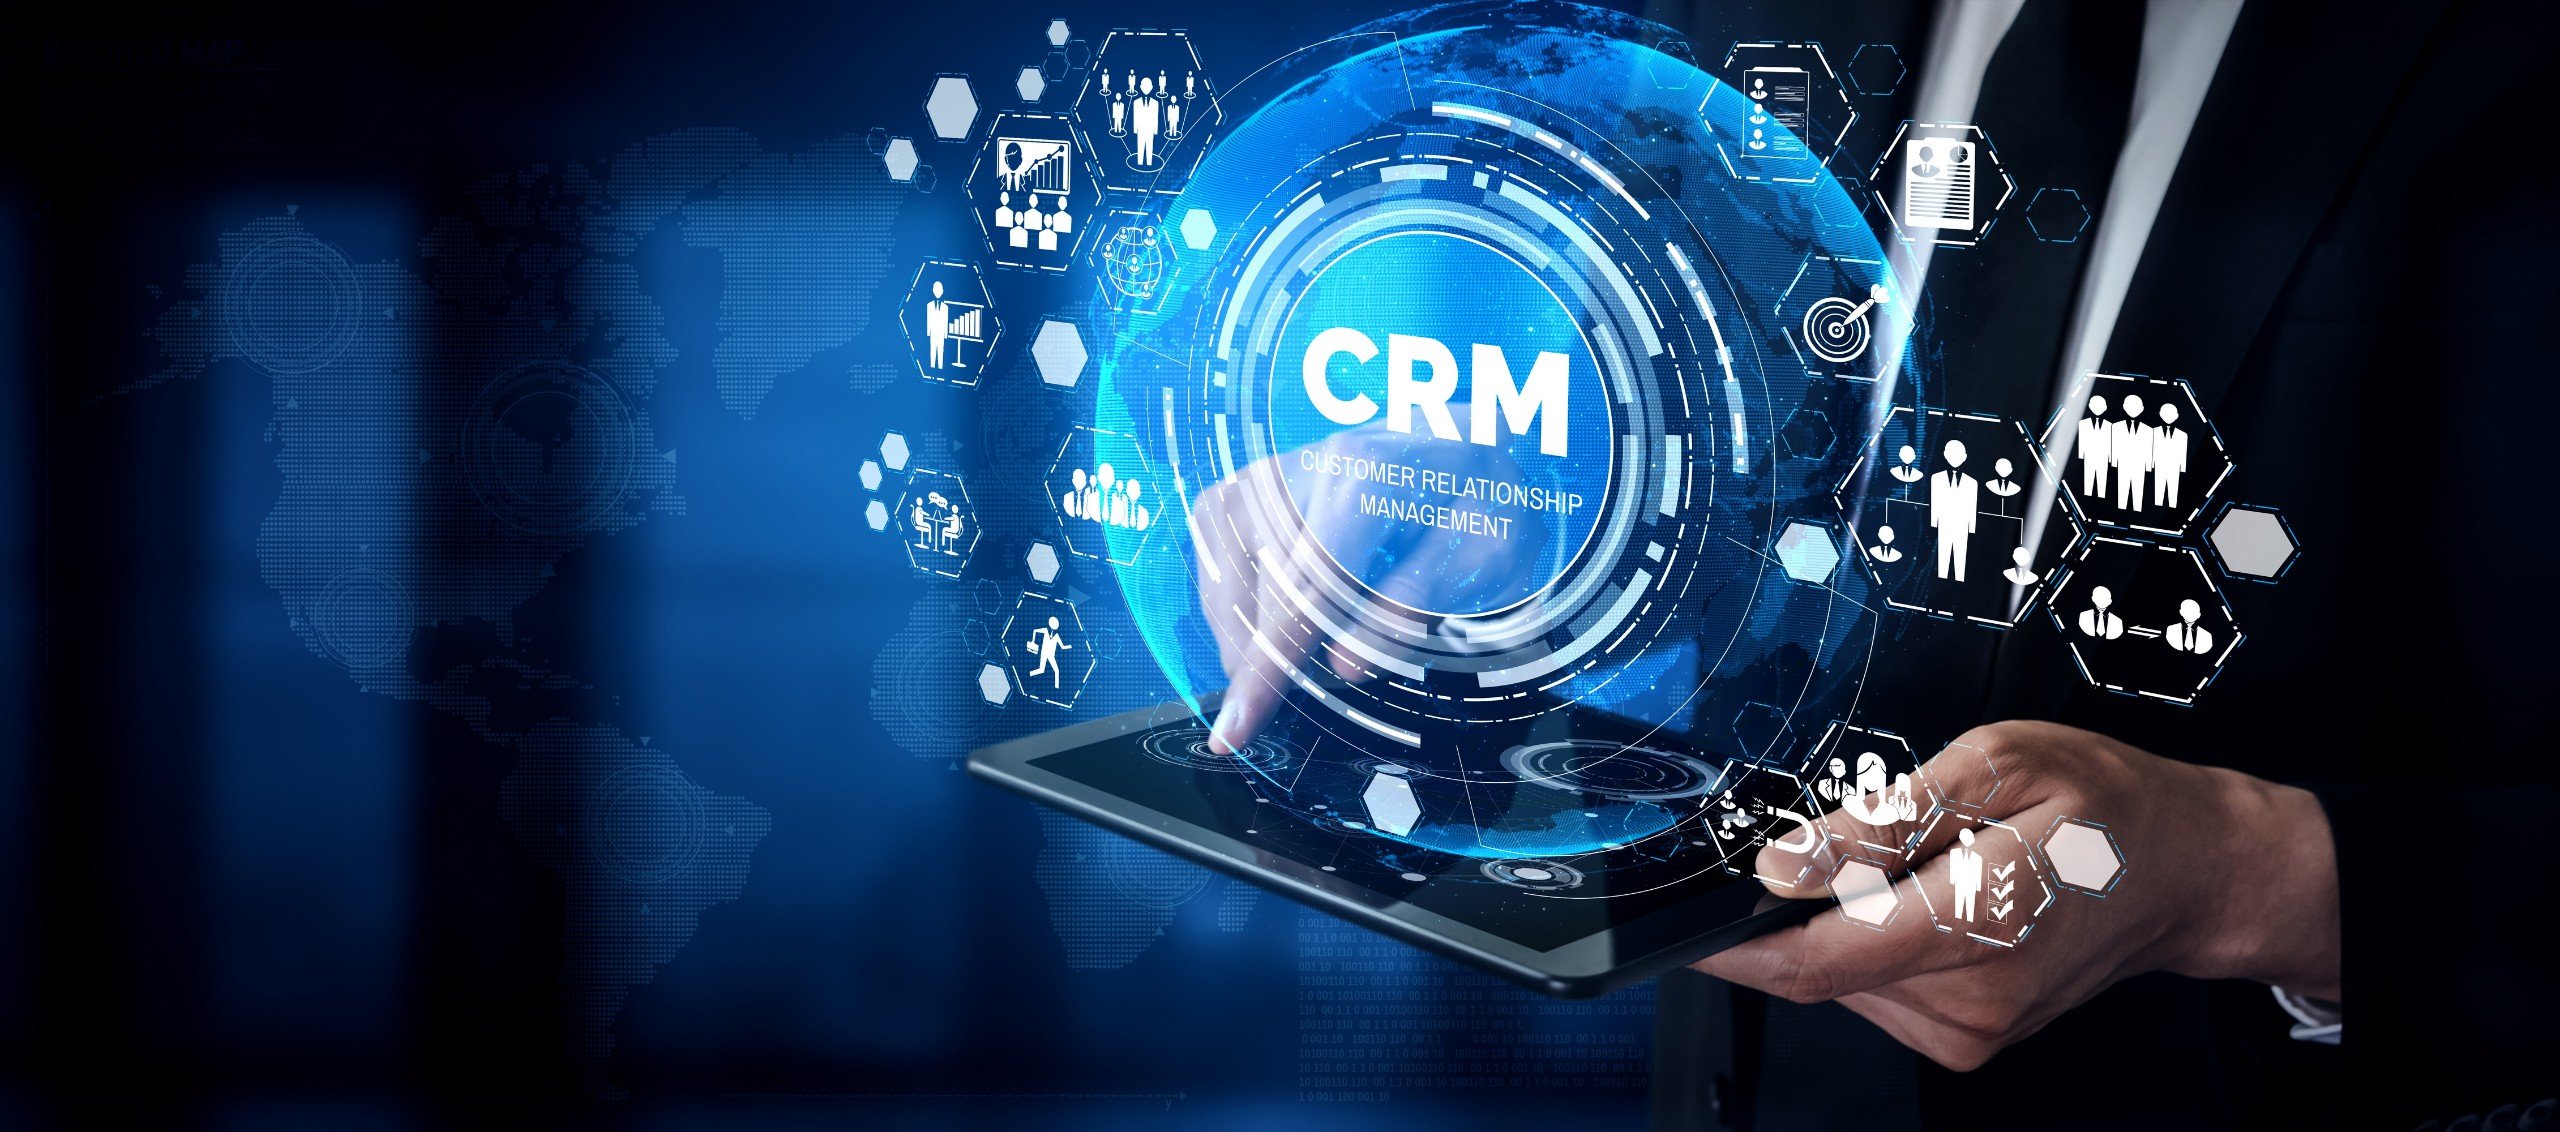 Chi phí triển khai phần mềm CRM cho doanh nghiệp SME là bao nhiêu? Giá phần mềm CRM